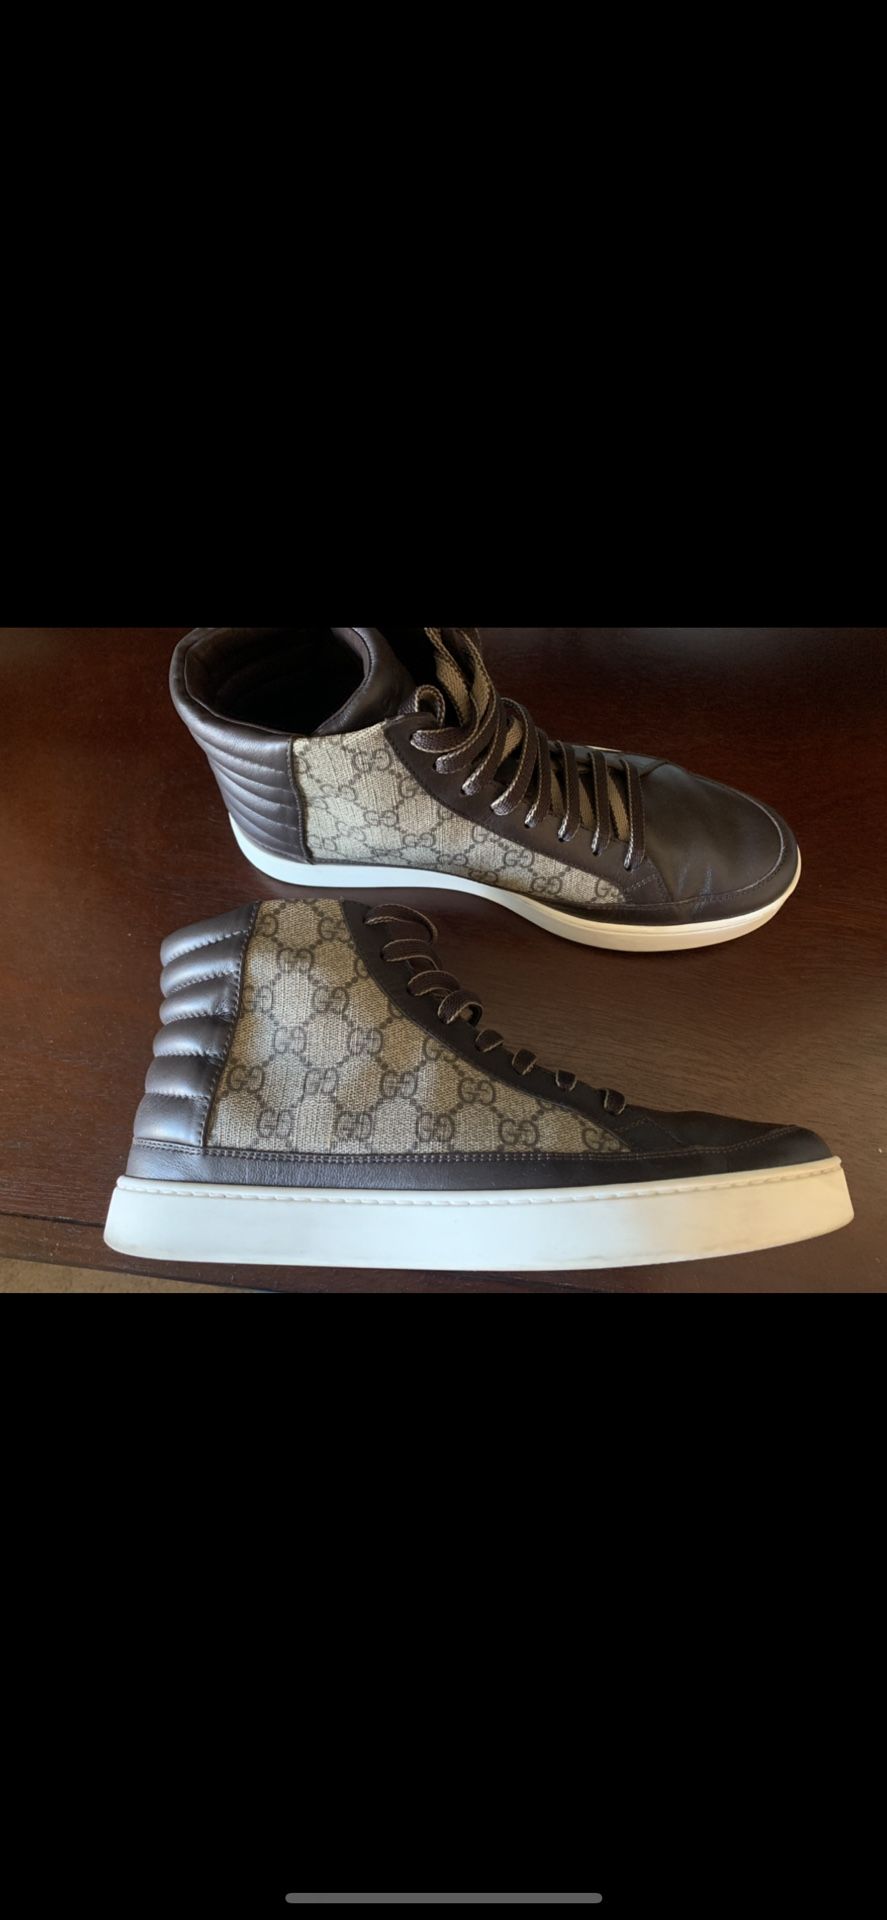 Gucci shoes 100% authentic size 9.5